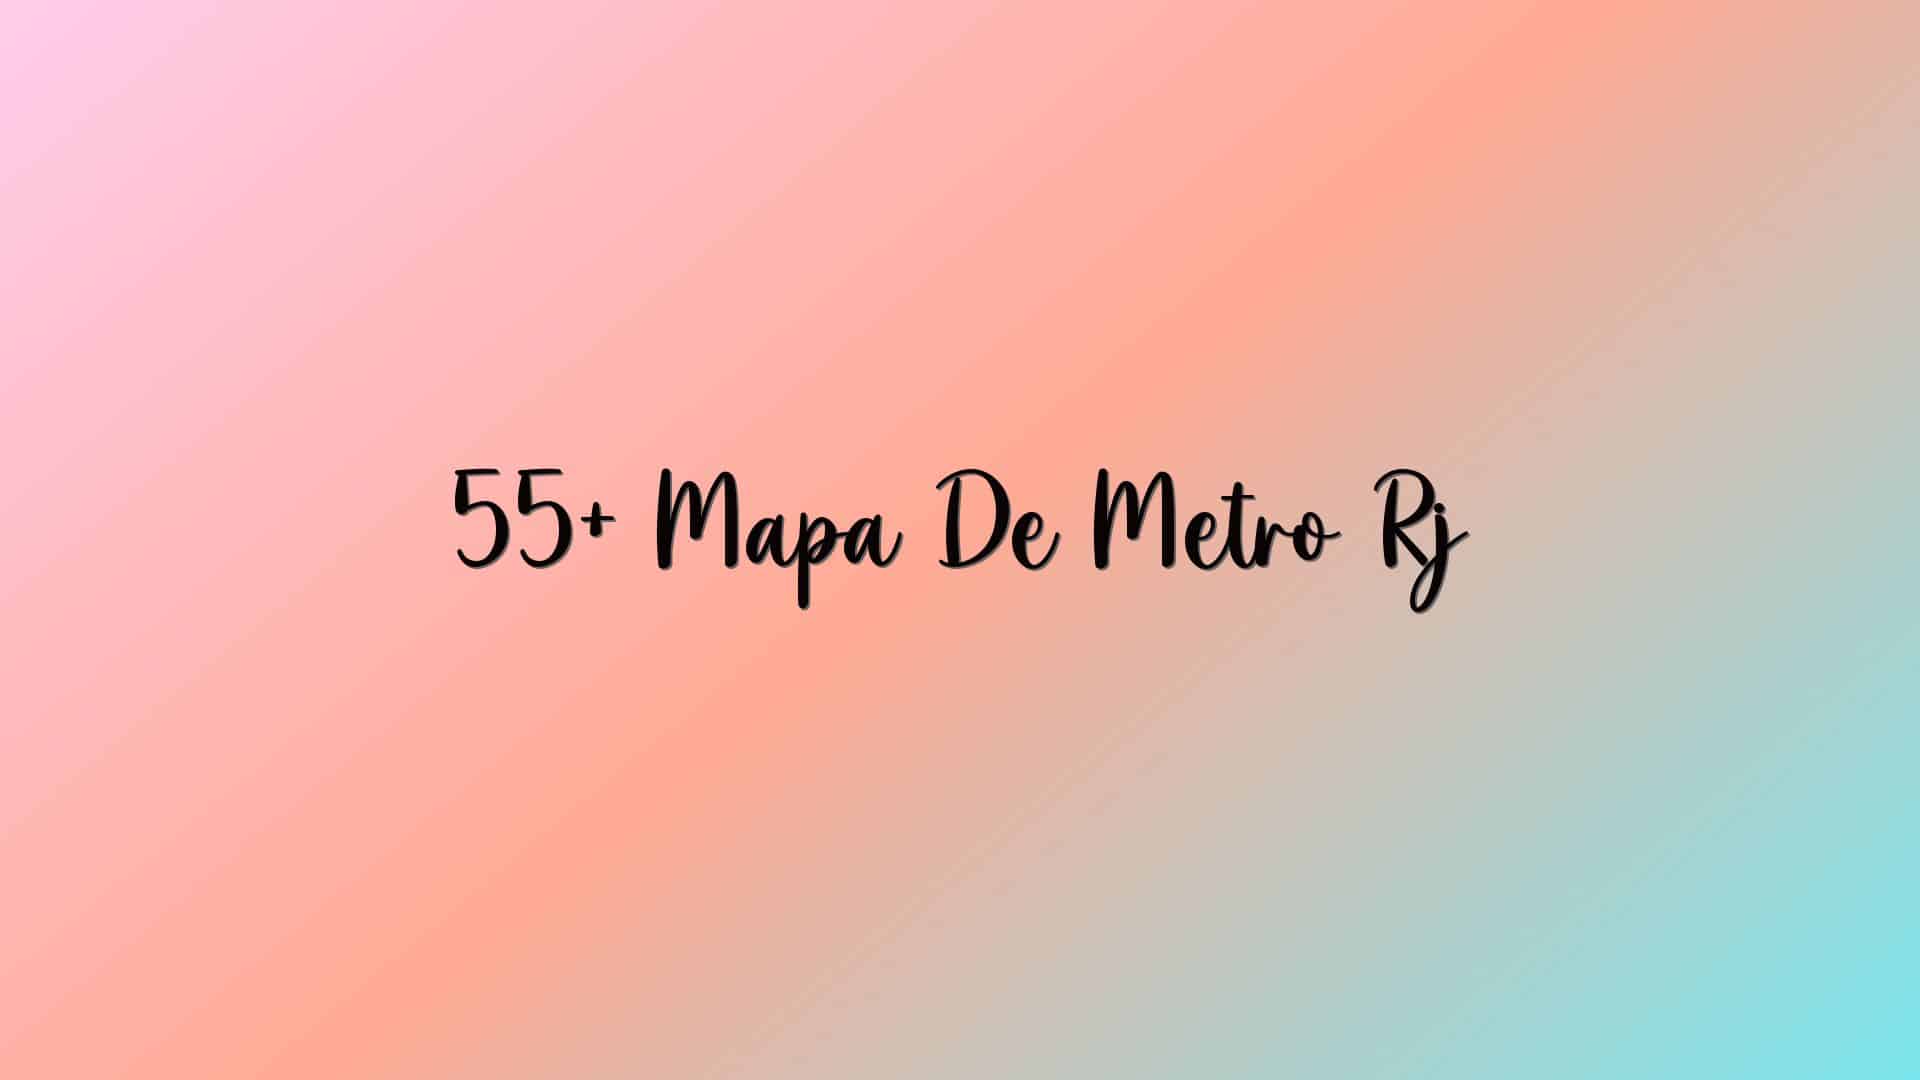 55+ Mapa De Metro Rj